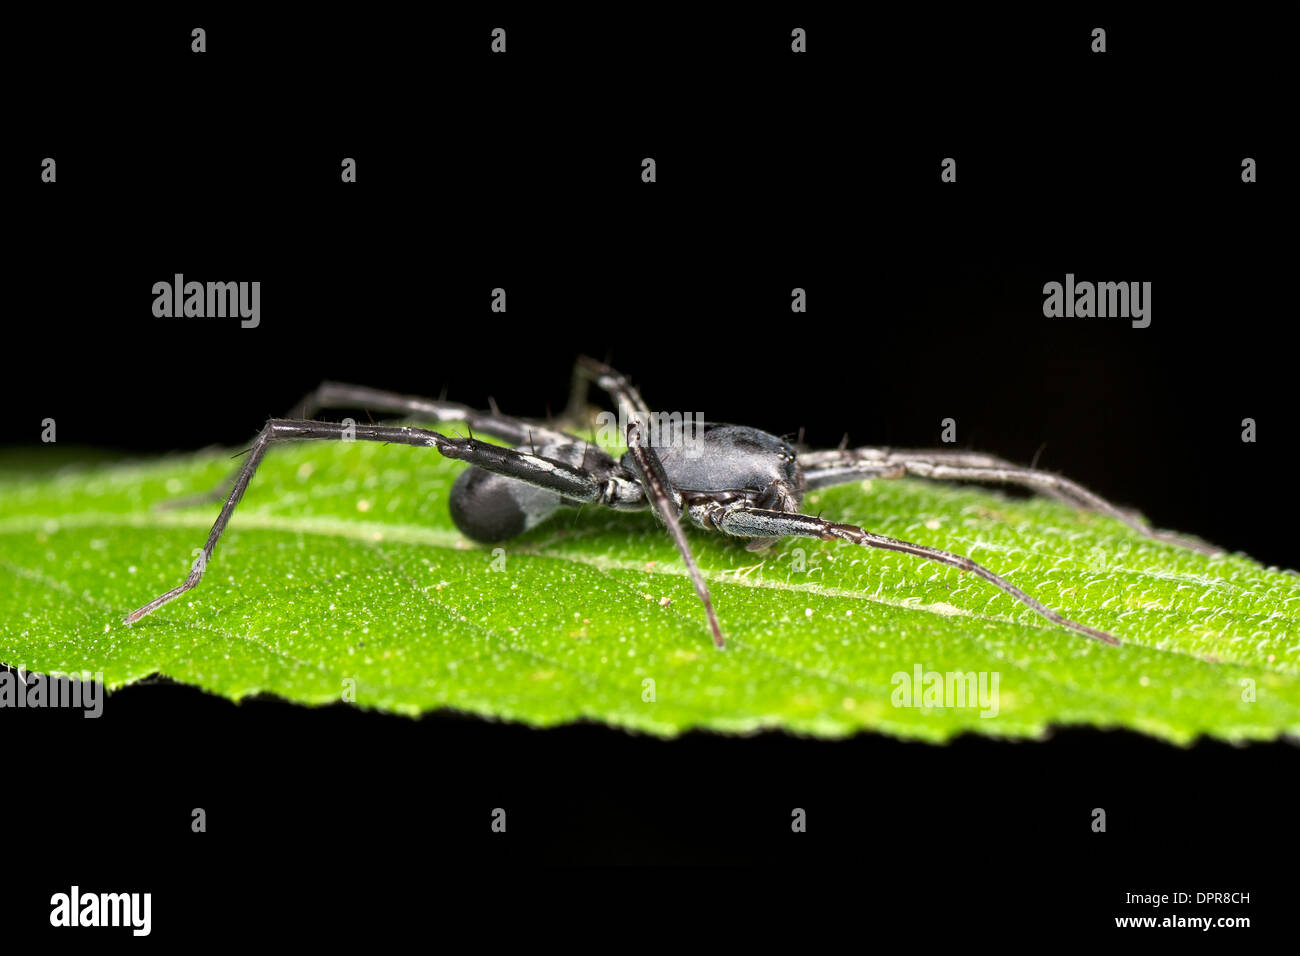 Corinnid Sac Spinnen (Familie Corinnidae), werden gedacht, um Ameise imitiert werden. Stockfoto